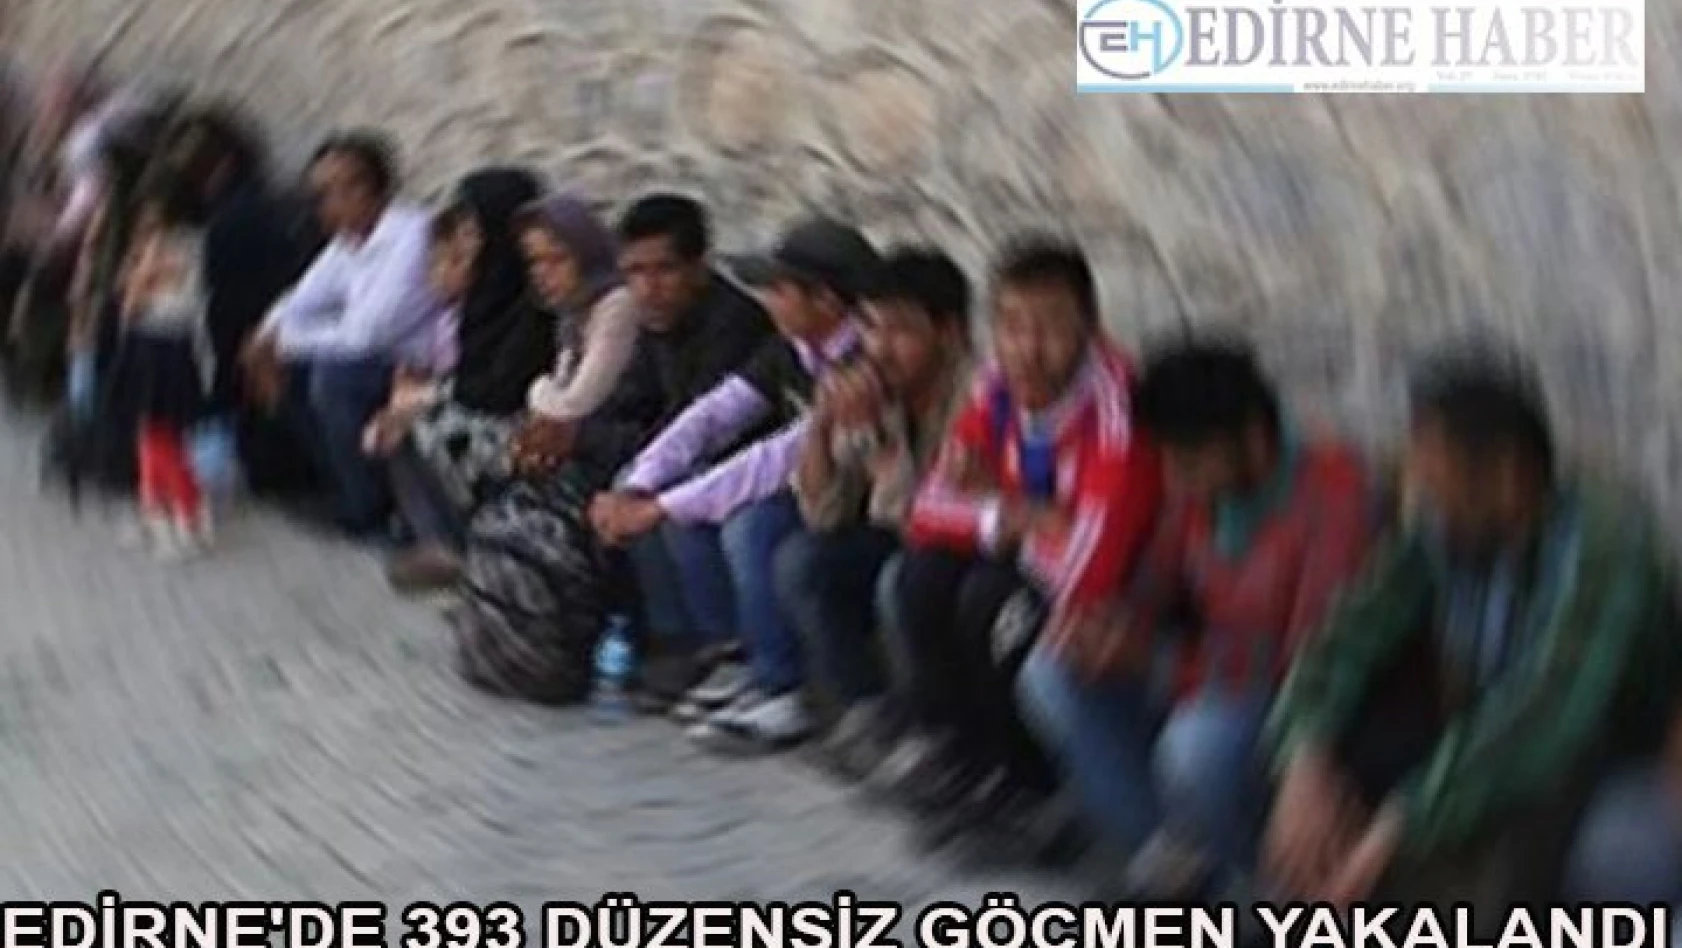 Edirne'de 393 düzensiz göçmen yakalandı